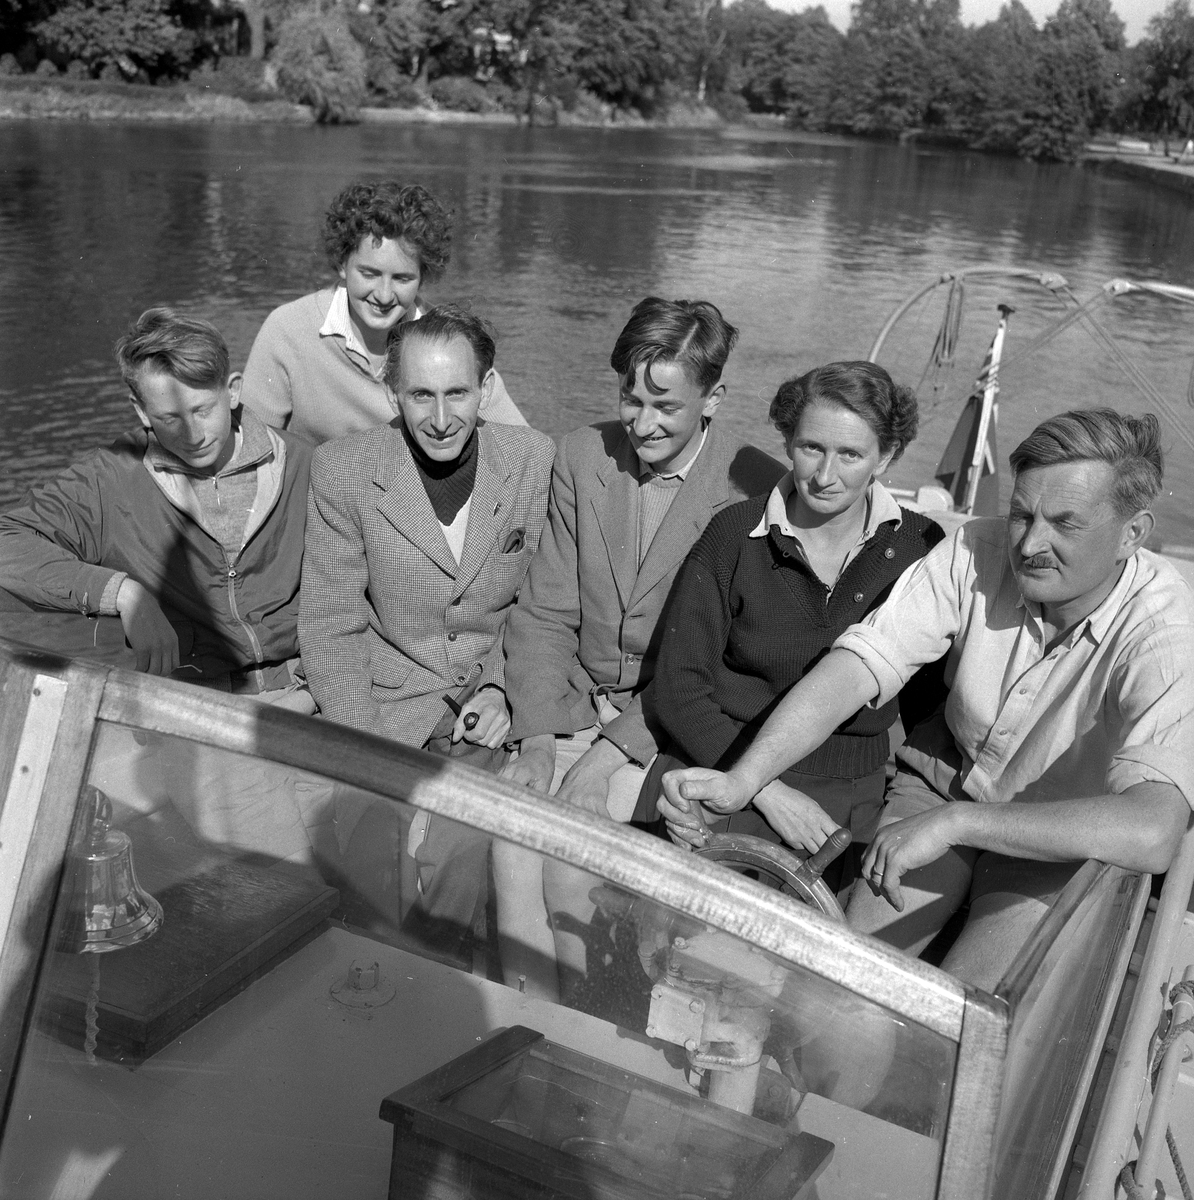 Engelsk båt i Örebro.
5 augusti 1958.